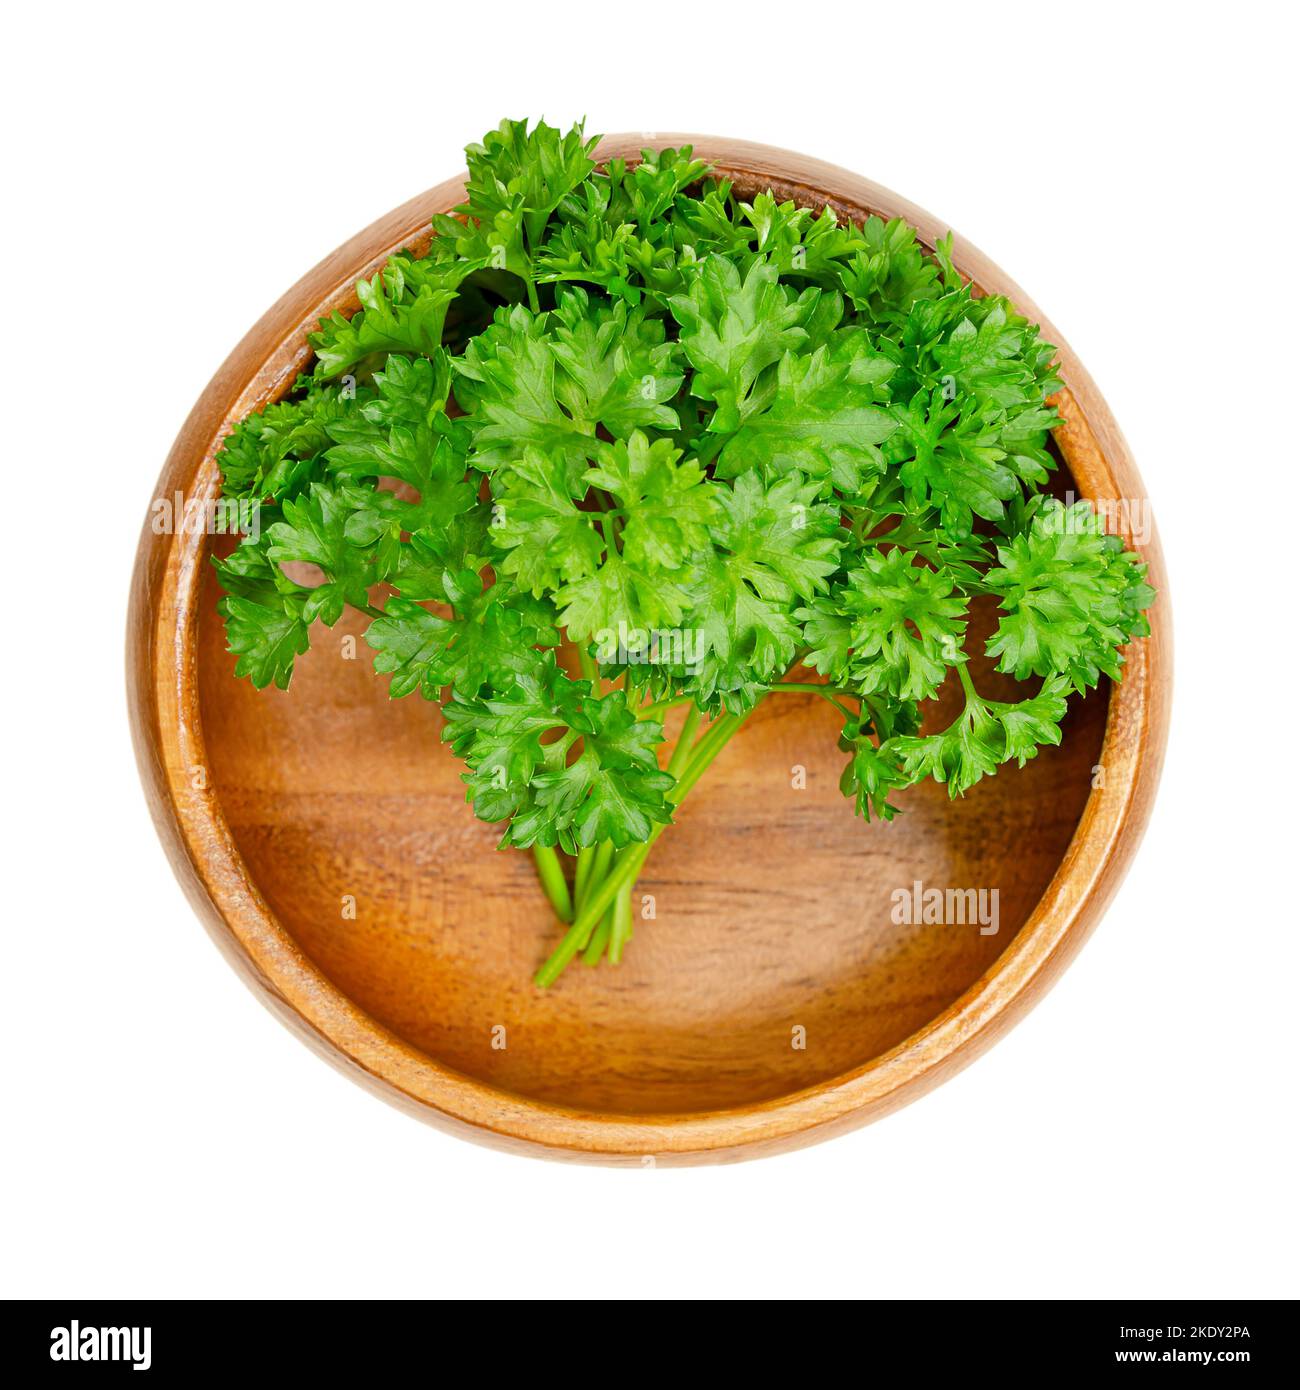 Lockige Petersilie, in einer Holzschüssel. Frische, lockige Petersilie mit leuchtend grünen, zerkrinkelten Blättern, die als Garnierung verwendet wird. Petroselinum crispum. Stockfoto